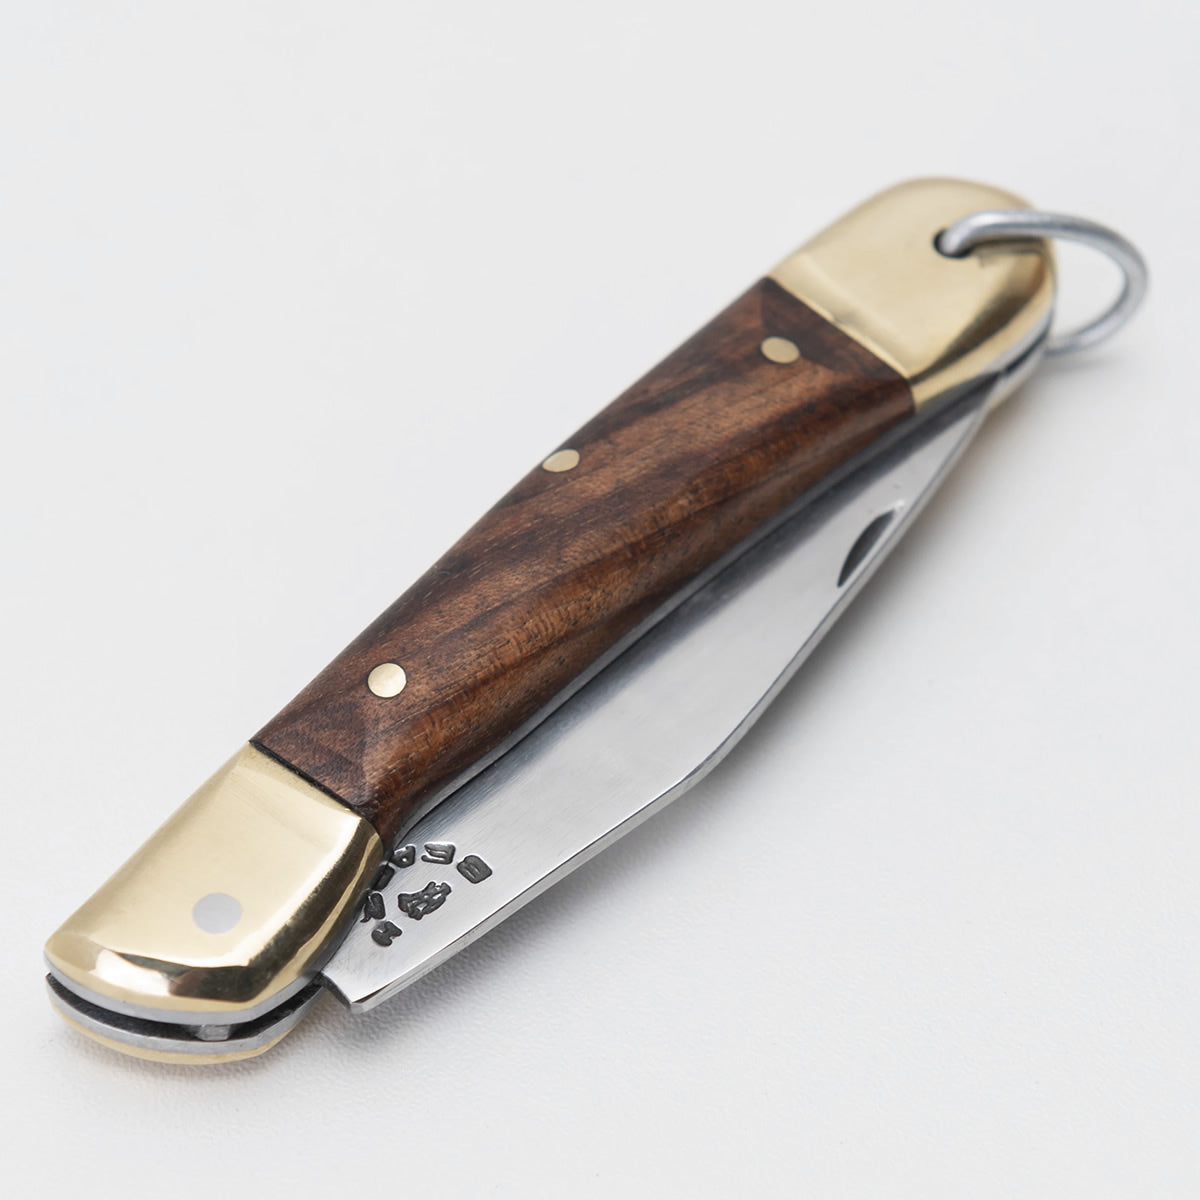 Canivete clássico com lâmina em aço inox 420 e cabo com talas de madeira nobre.